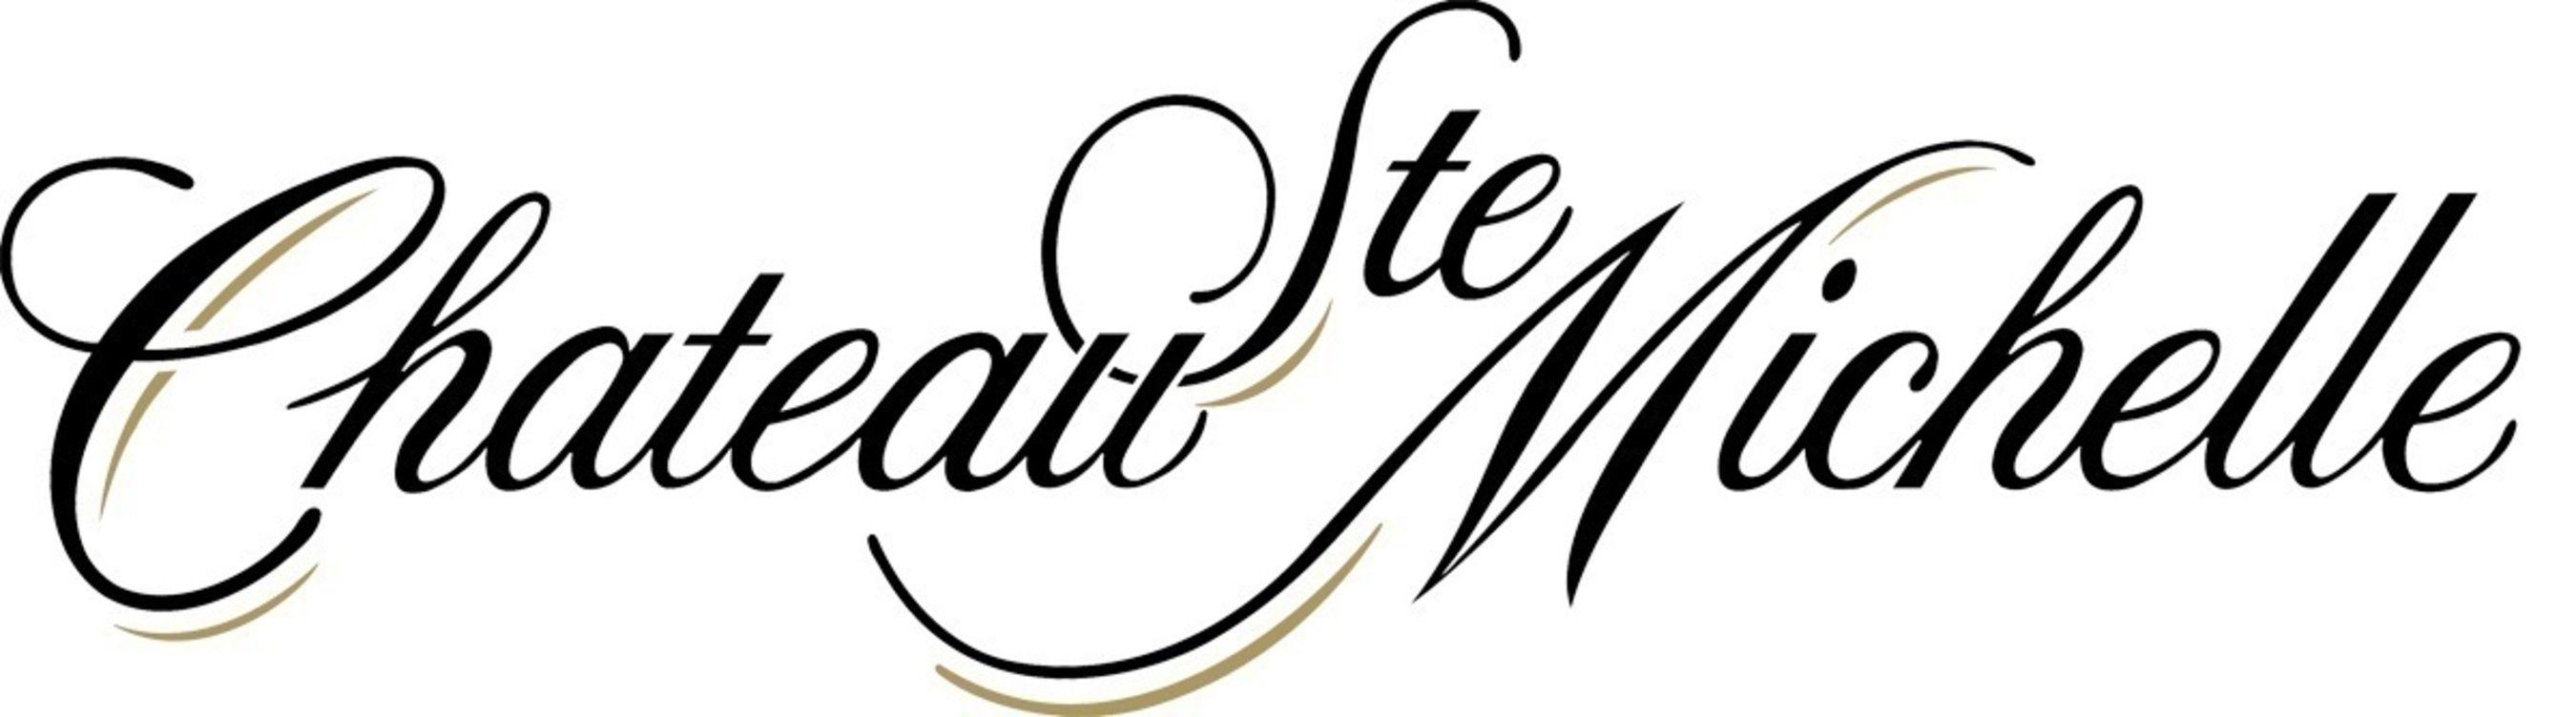 Michelle Logo - Chateau Ste. Michelle Announces its 2016 Summer Concert Series